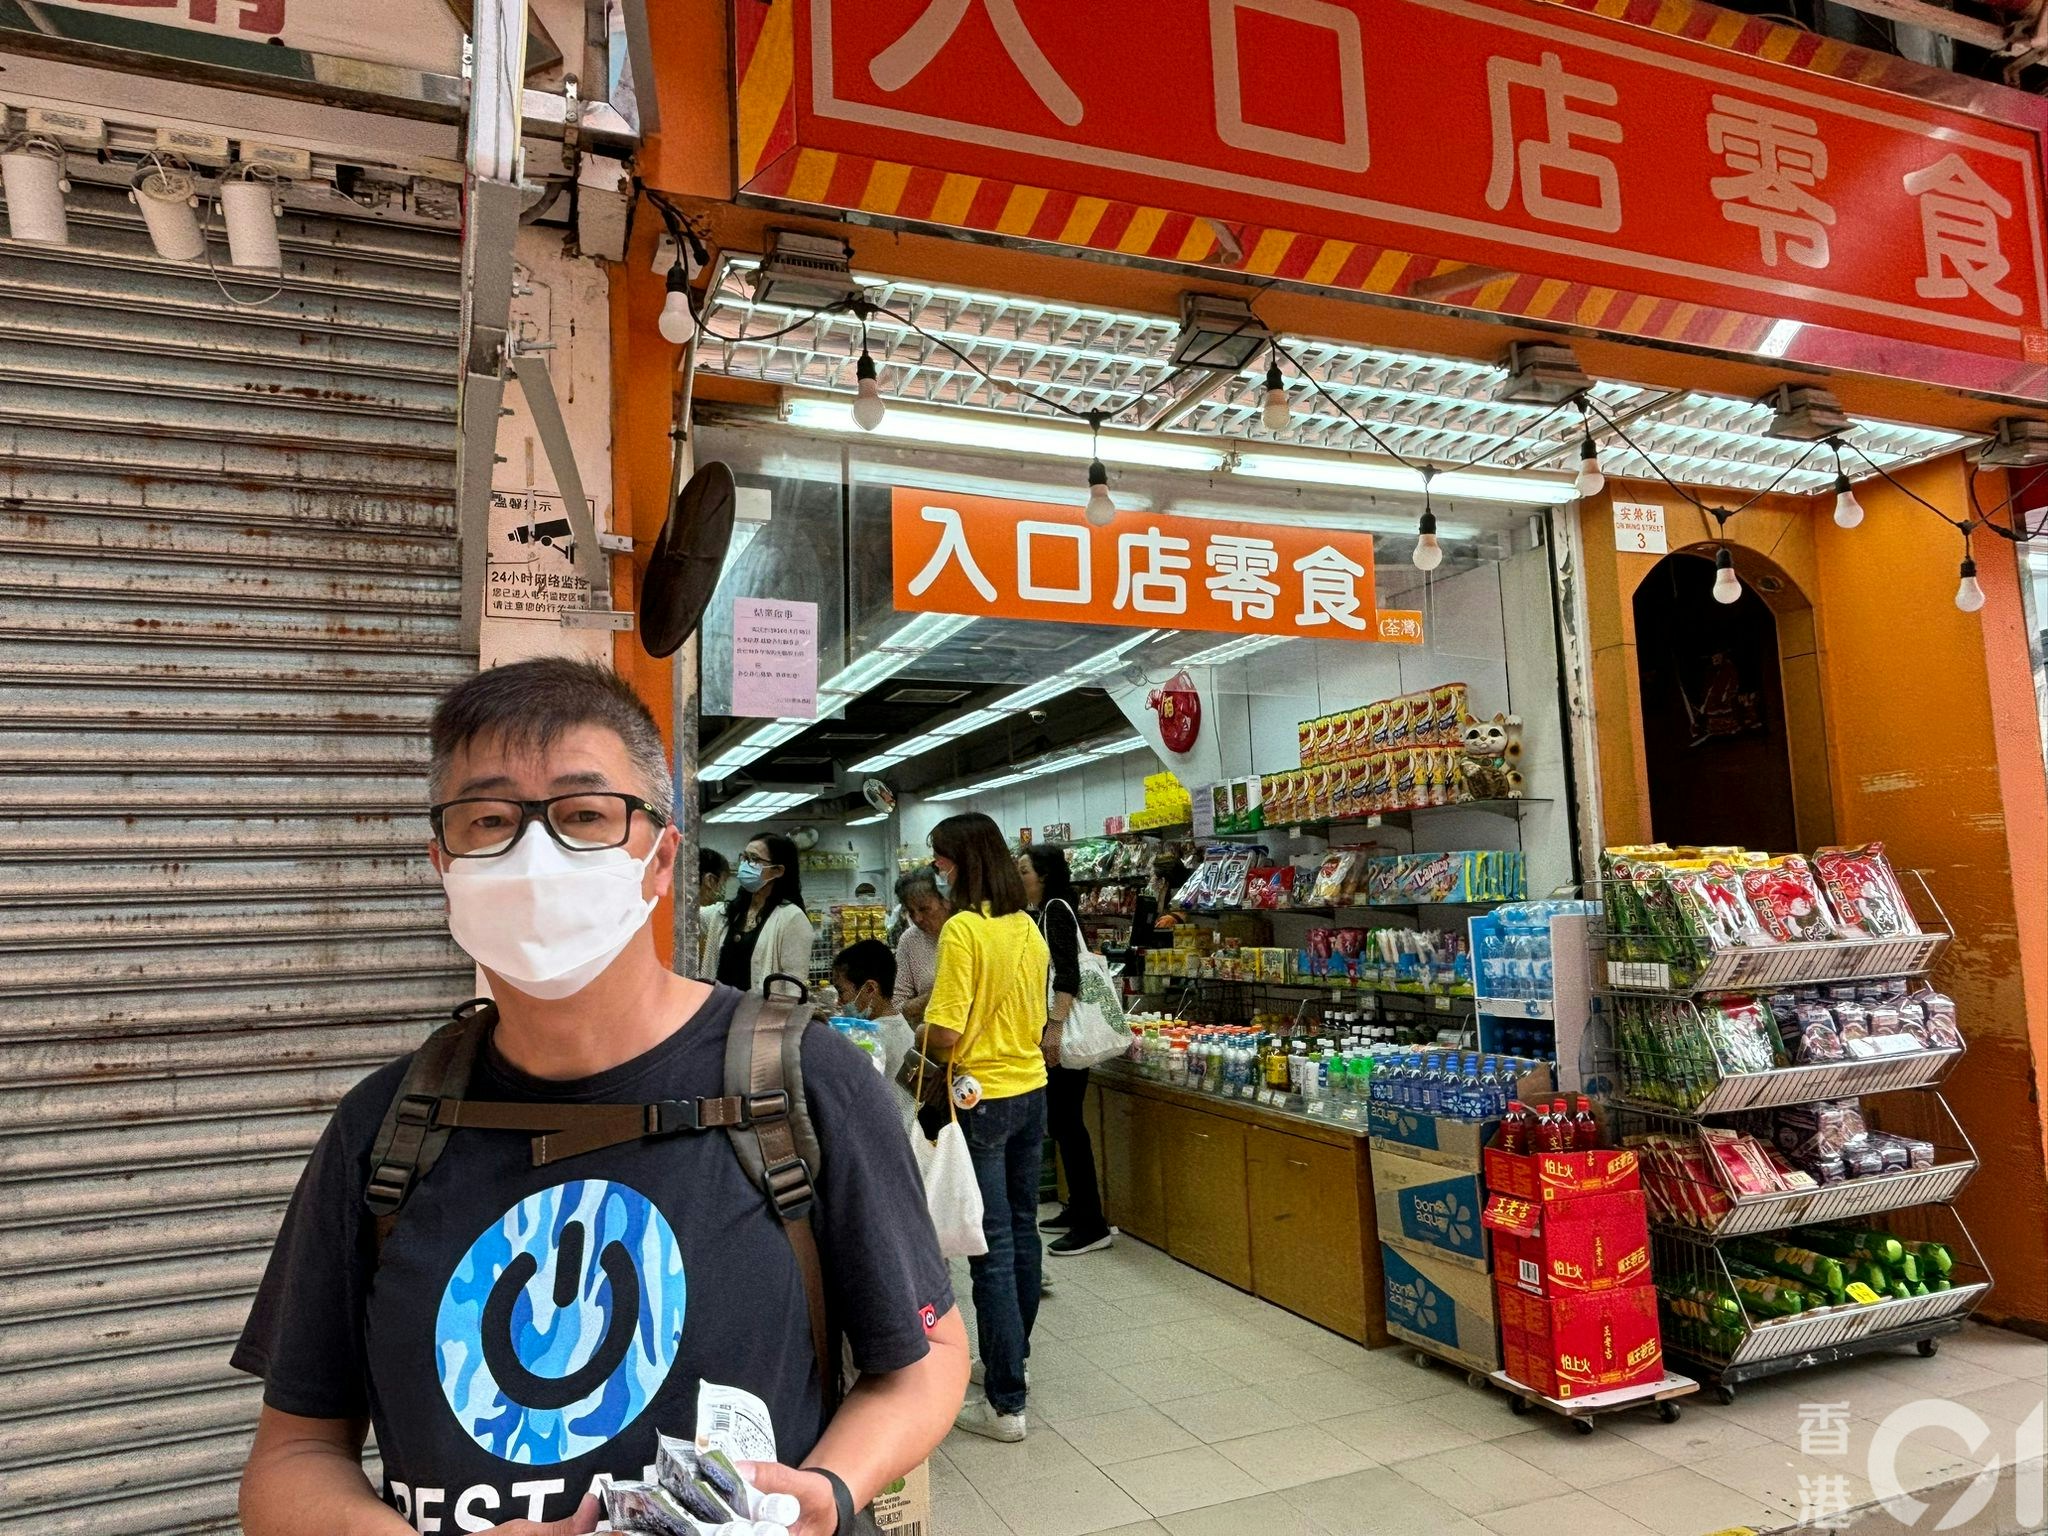 陈先生说近年香港经济表现差，物价上升，加上部分市民收入减少，消费力因而下降，致令本地商舖接连倒闭，苦笑道：「啲舖头有生意点会执呀。」（吴美松摄）